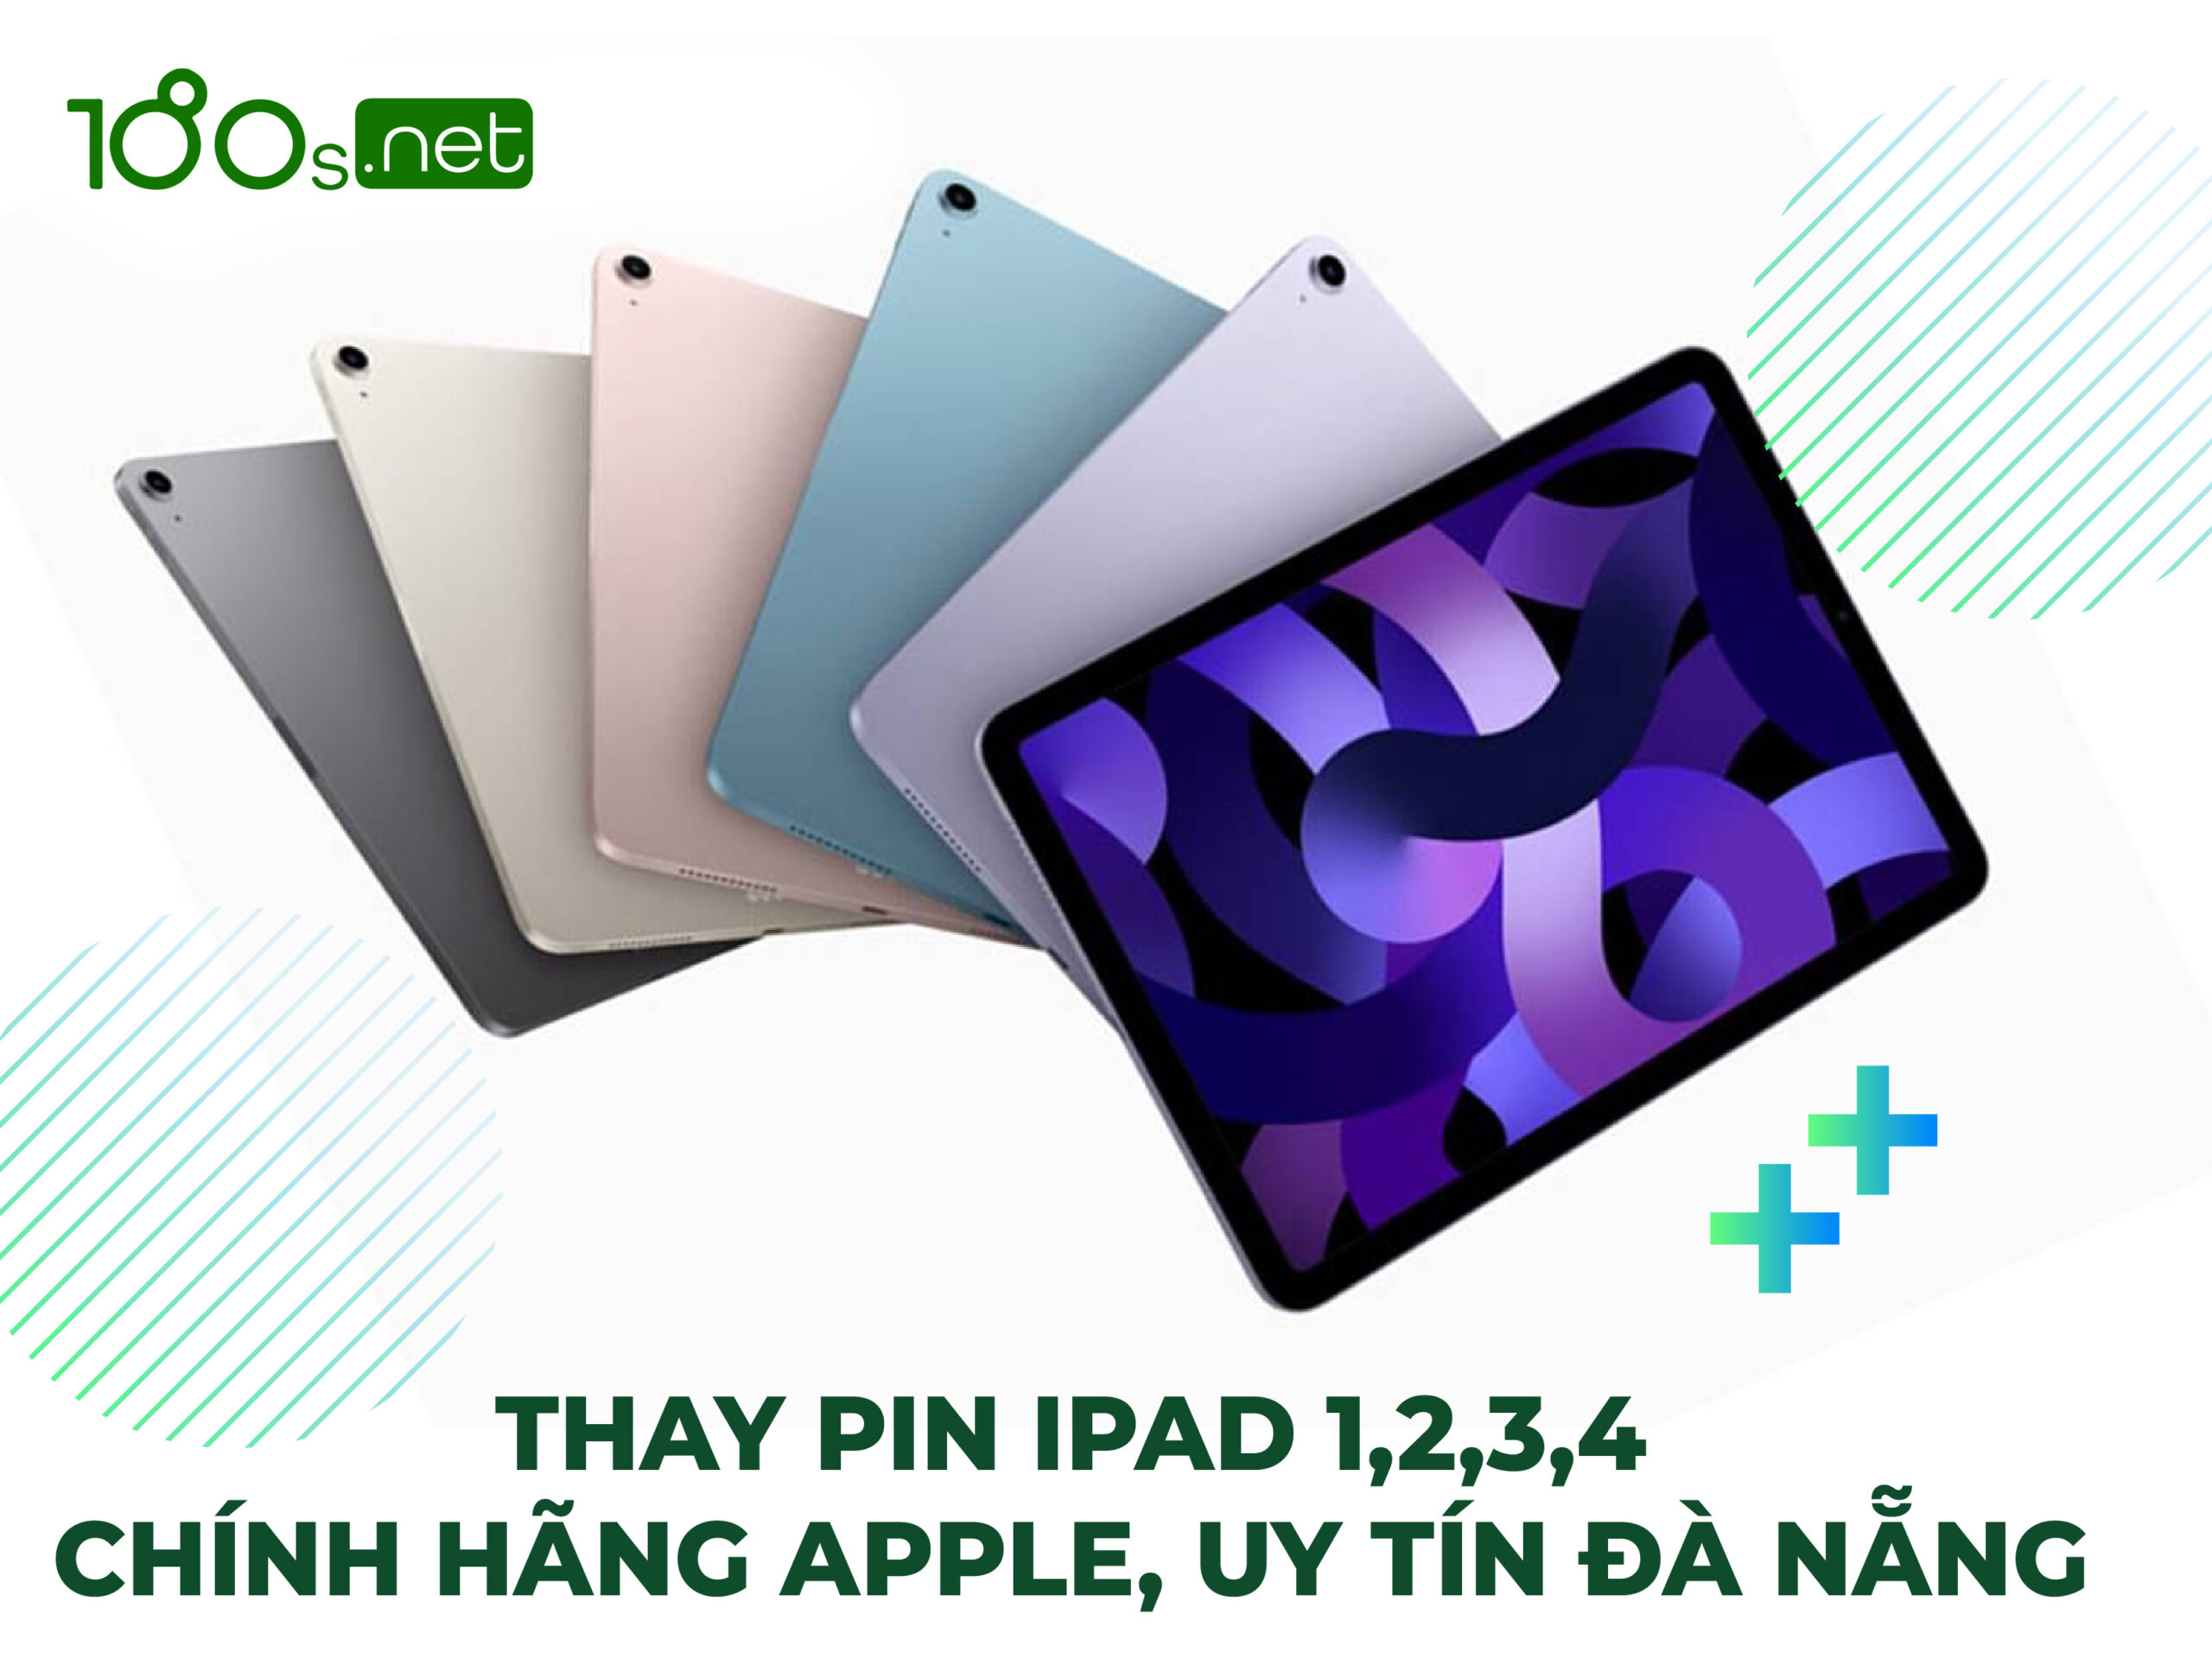 Thay pin iPad 1,2,3,4 chính hãng Apple uy tín Đà Nẵng